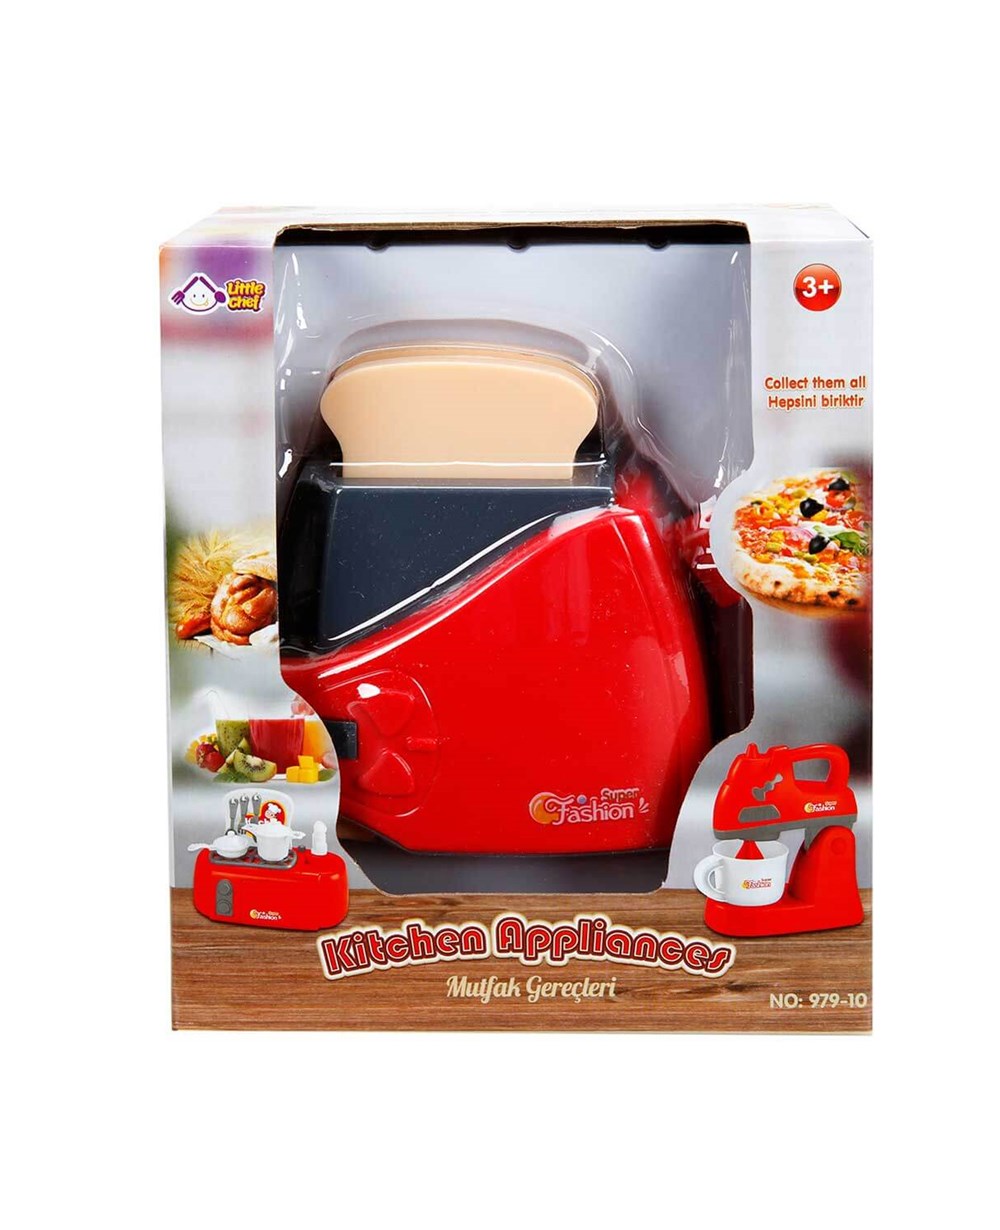 Sunman Küçük Mutfak Gereçleri Rol Oyuncakları 13205 Ekmek Kızartma Makinesi  I Merkez Oyuncak I Güvenilir Alışveriş, Hızlı Kargo, Kolay İade!